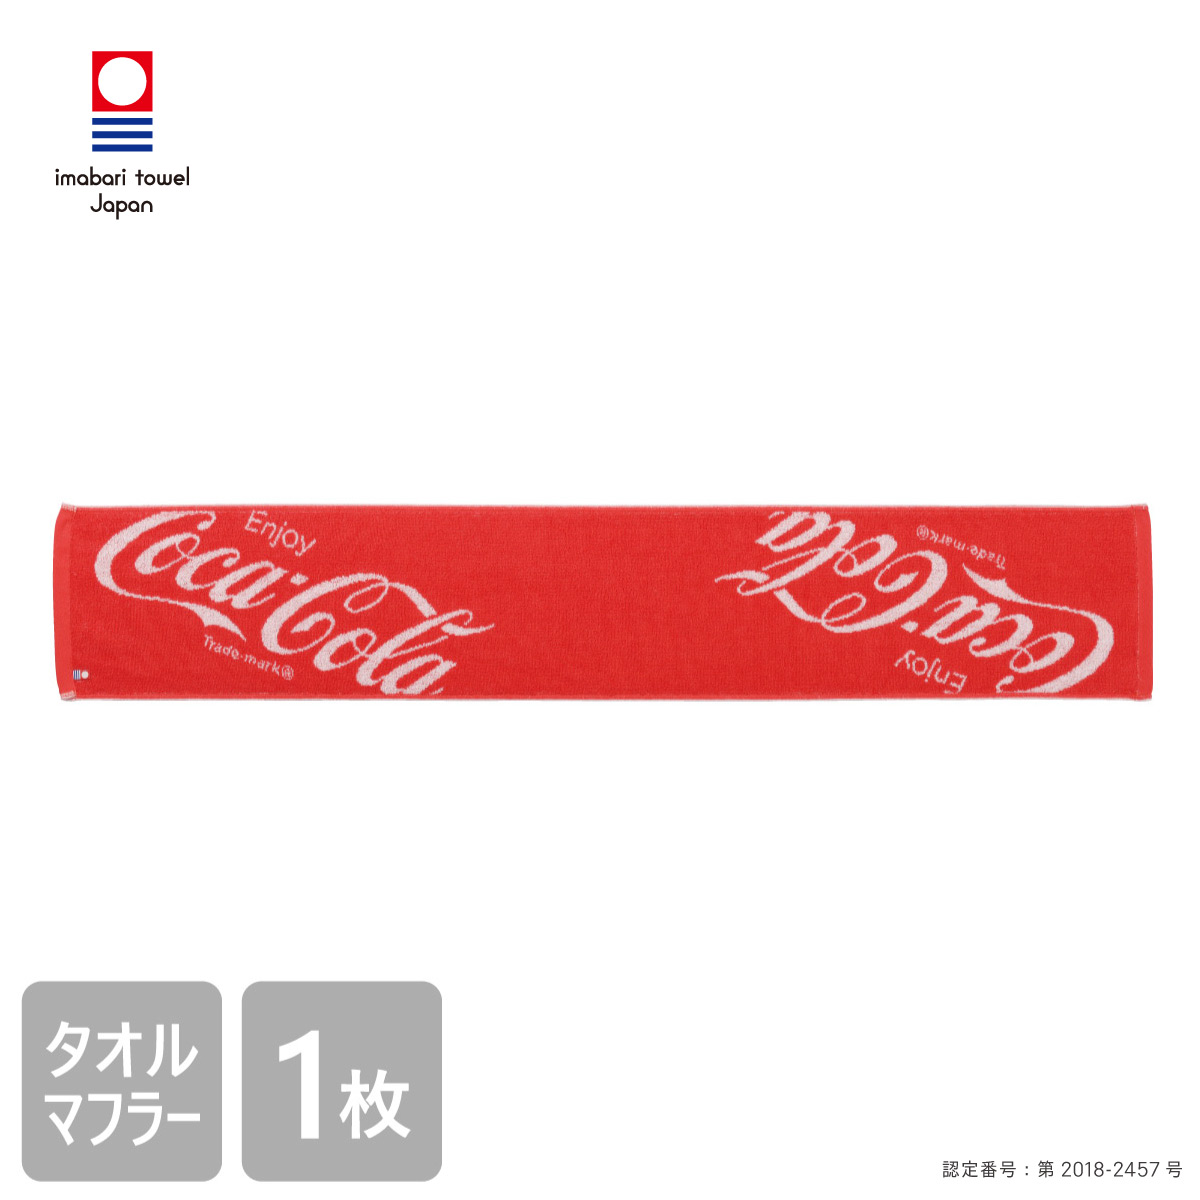 楽天市場 送料無料 コカ コーラ 今治 タオルマフラー 110cm Coca Cola グッズ 綿100 日本製 ジャガード かっこいい おしゃれ バラエティー 大人 こども 四季織々